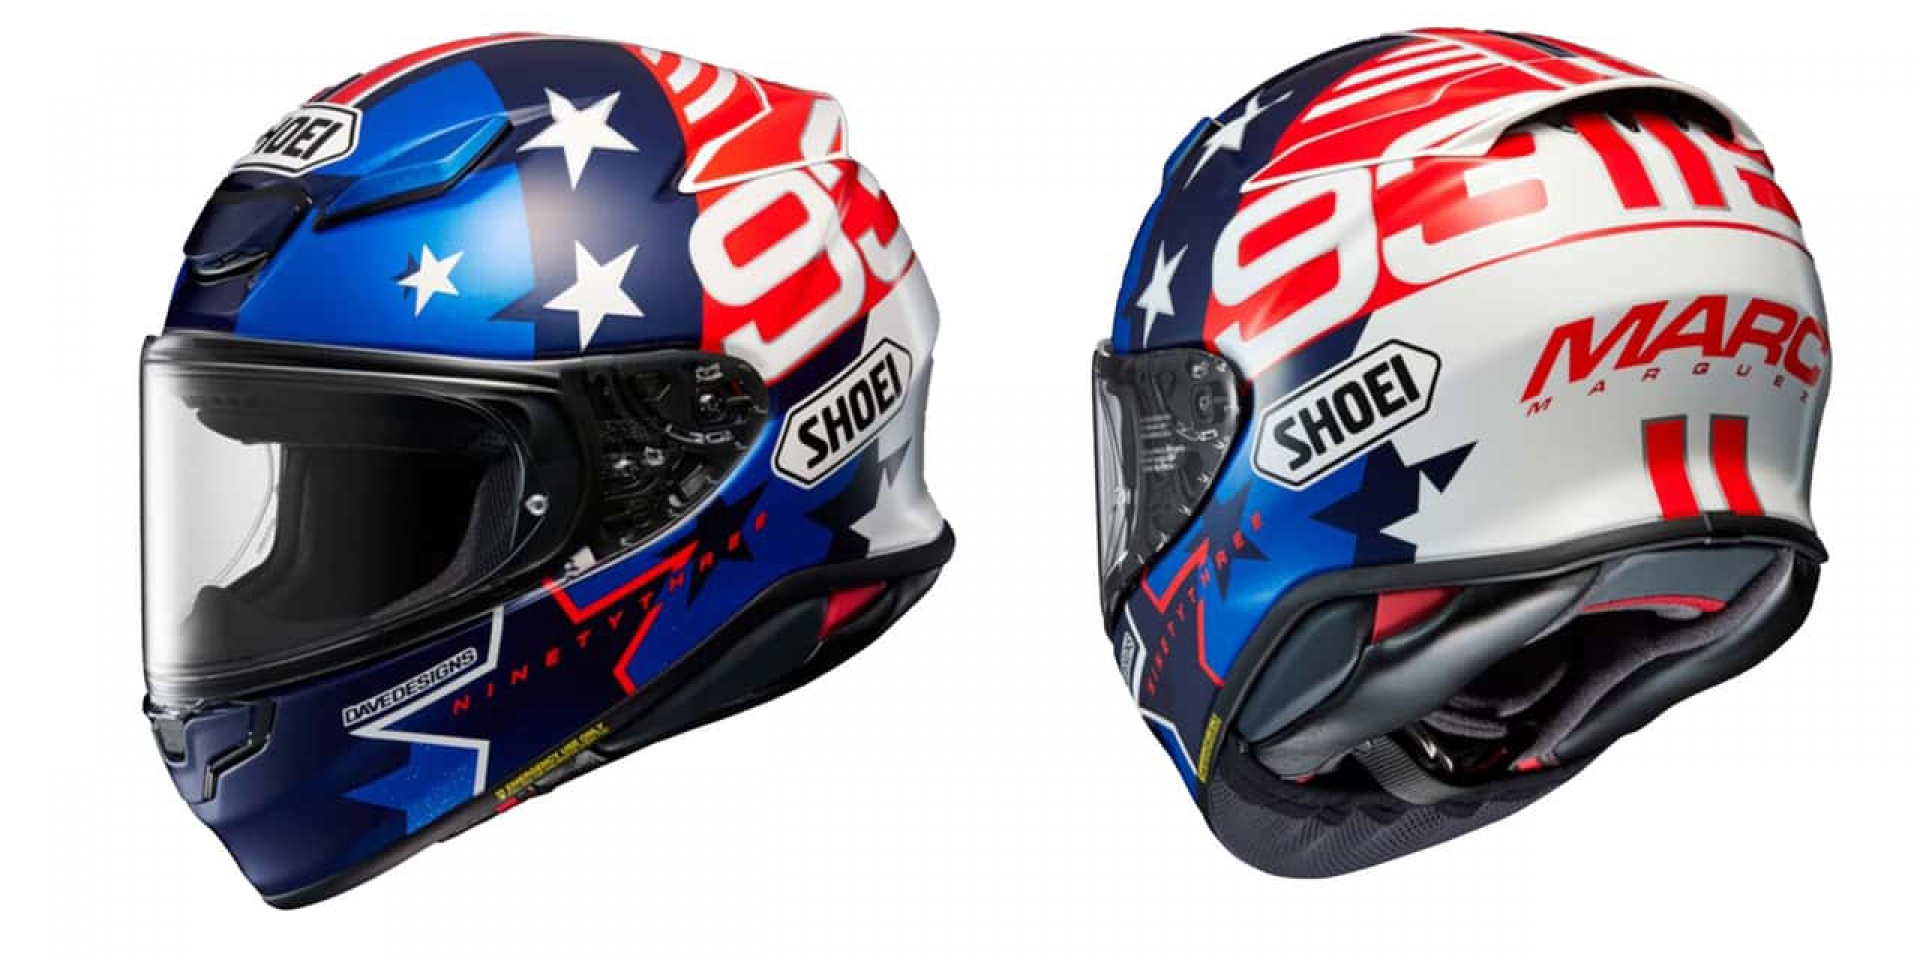 沒出賽依舊致敬！SHOEI推出Marc Marquez American Spirit Z8 限量彩繪帽